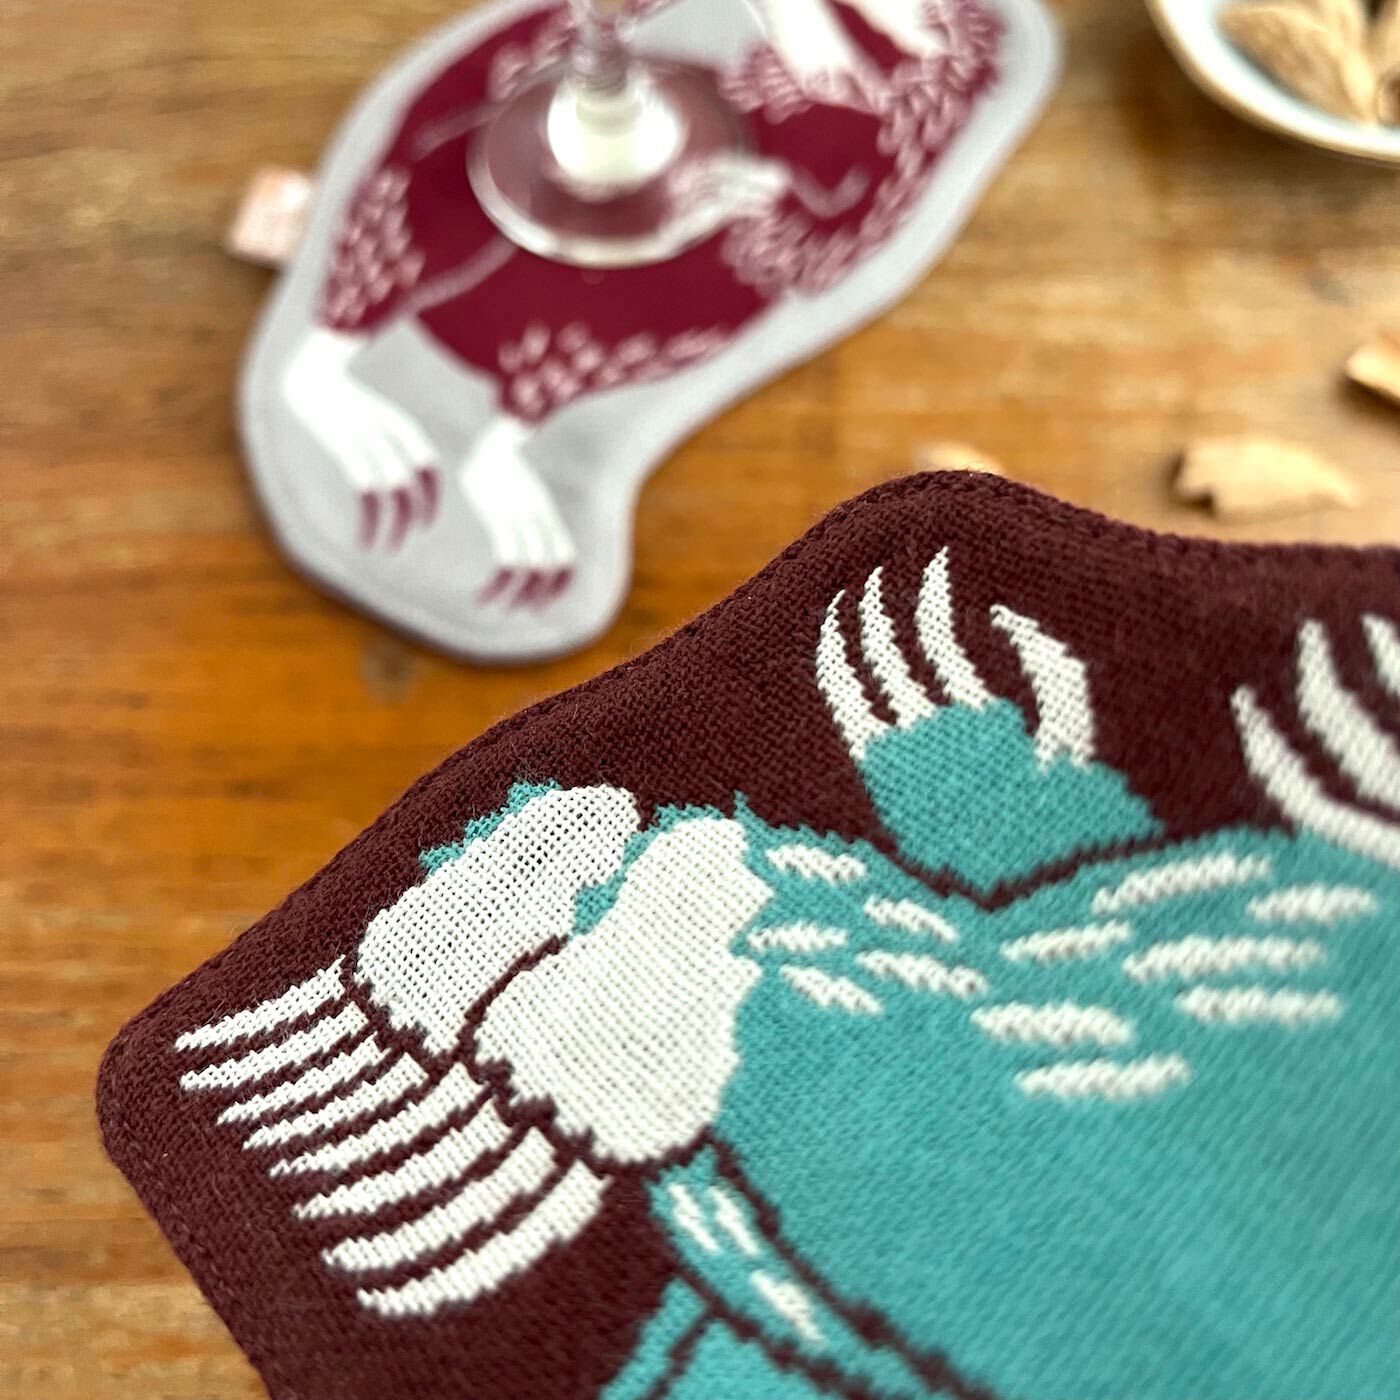 フェリシモの雑貨 Kraso|moritaMiW 織り柄が美しいリバーシブルコースターの会|作品を「織り」で美しく再現。織り柄ならではの味わい深さがたまりません。